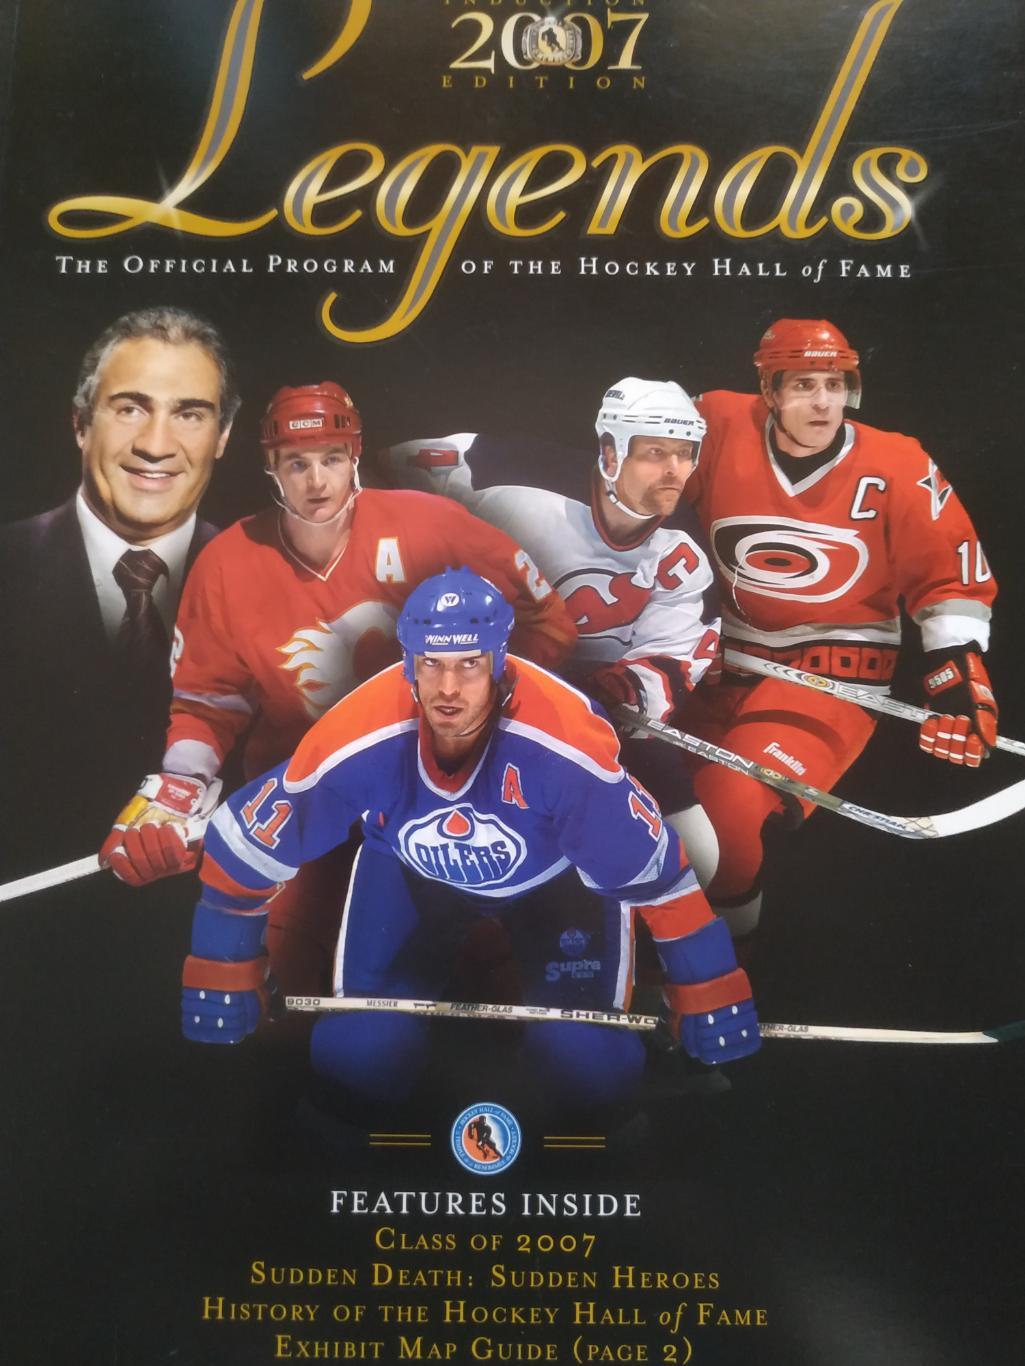 ХОККЕЙ ПРОГРАММА ЗАЛ СЛАВЫ НХЛ 2007 LEGENDS OF THE HHOF OFFICIAL PROGRAM